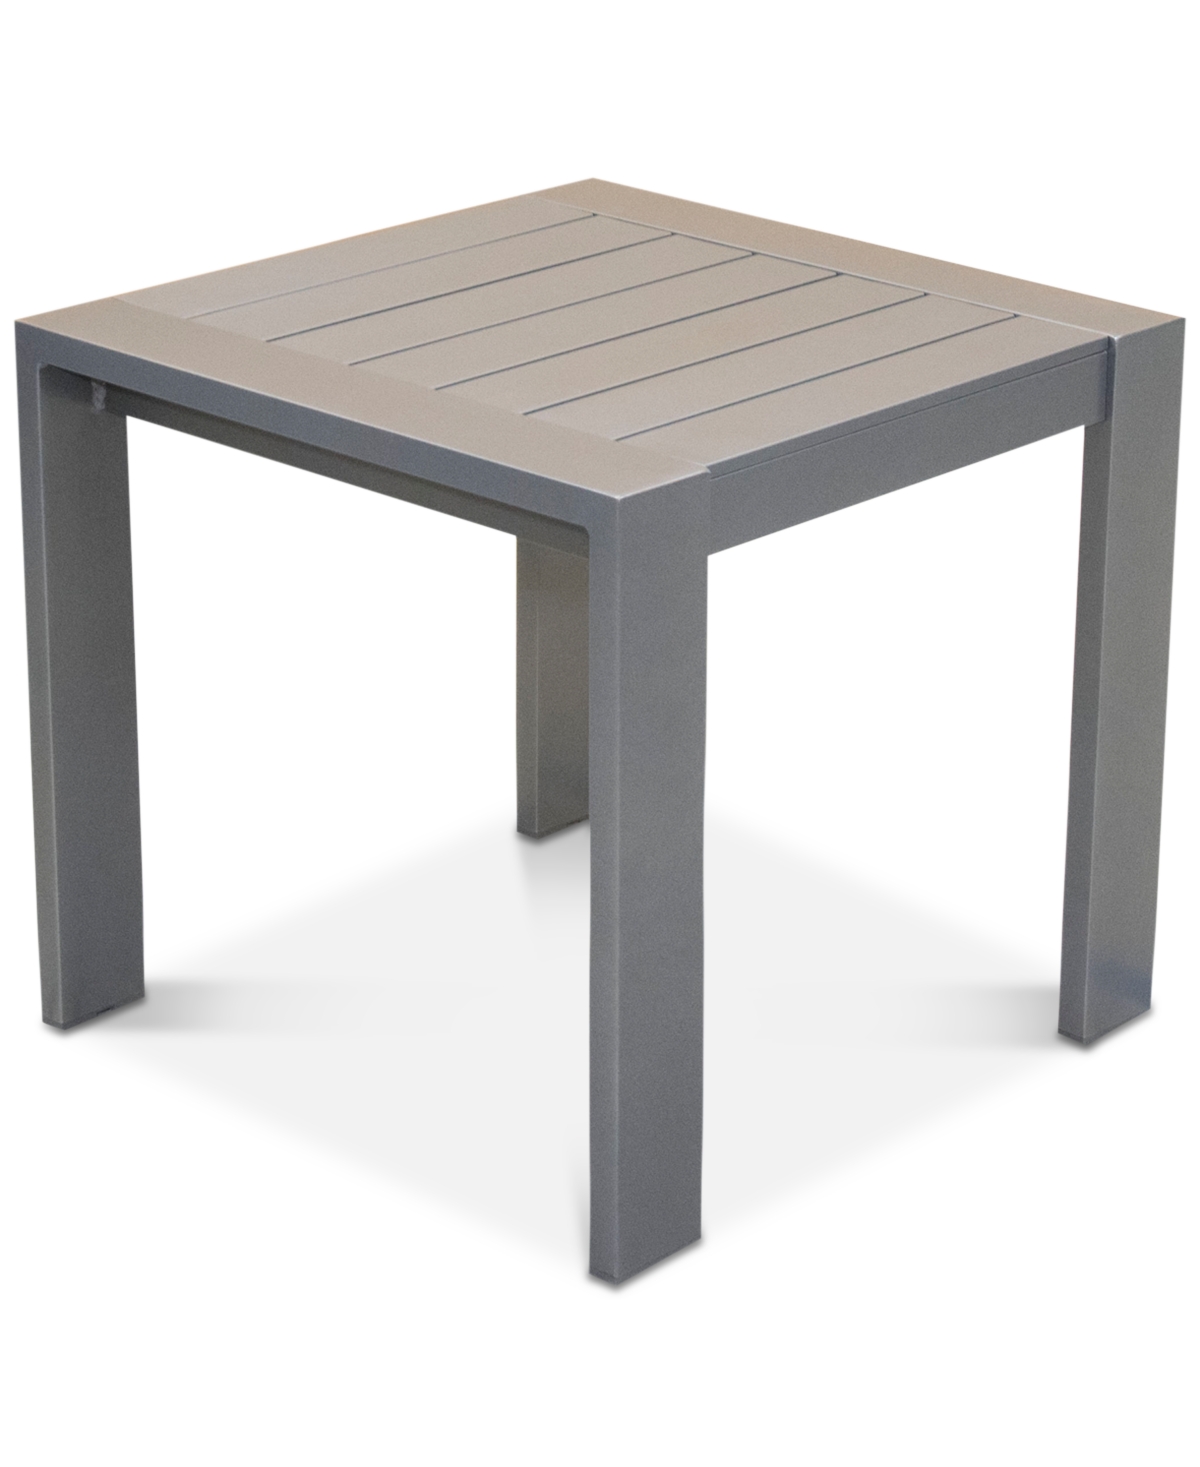 Aruba Gunmetal Aluminum End Table, Created for Macys